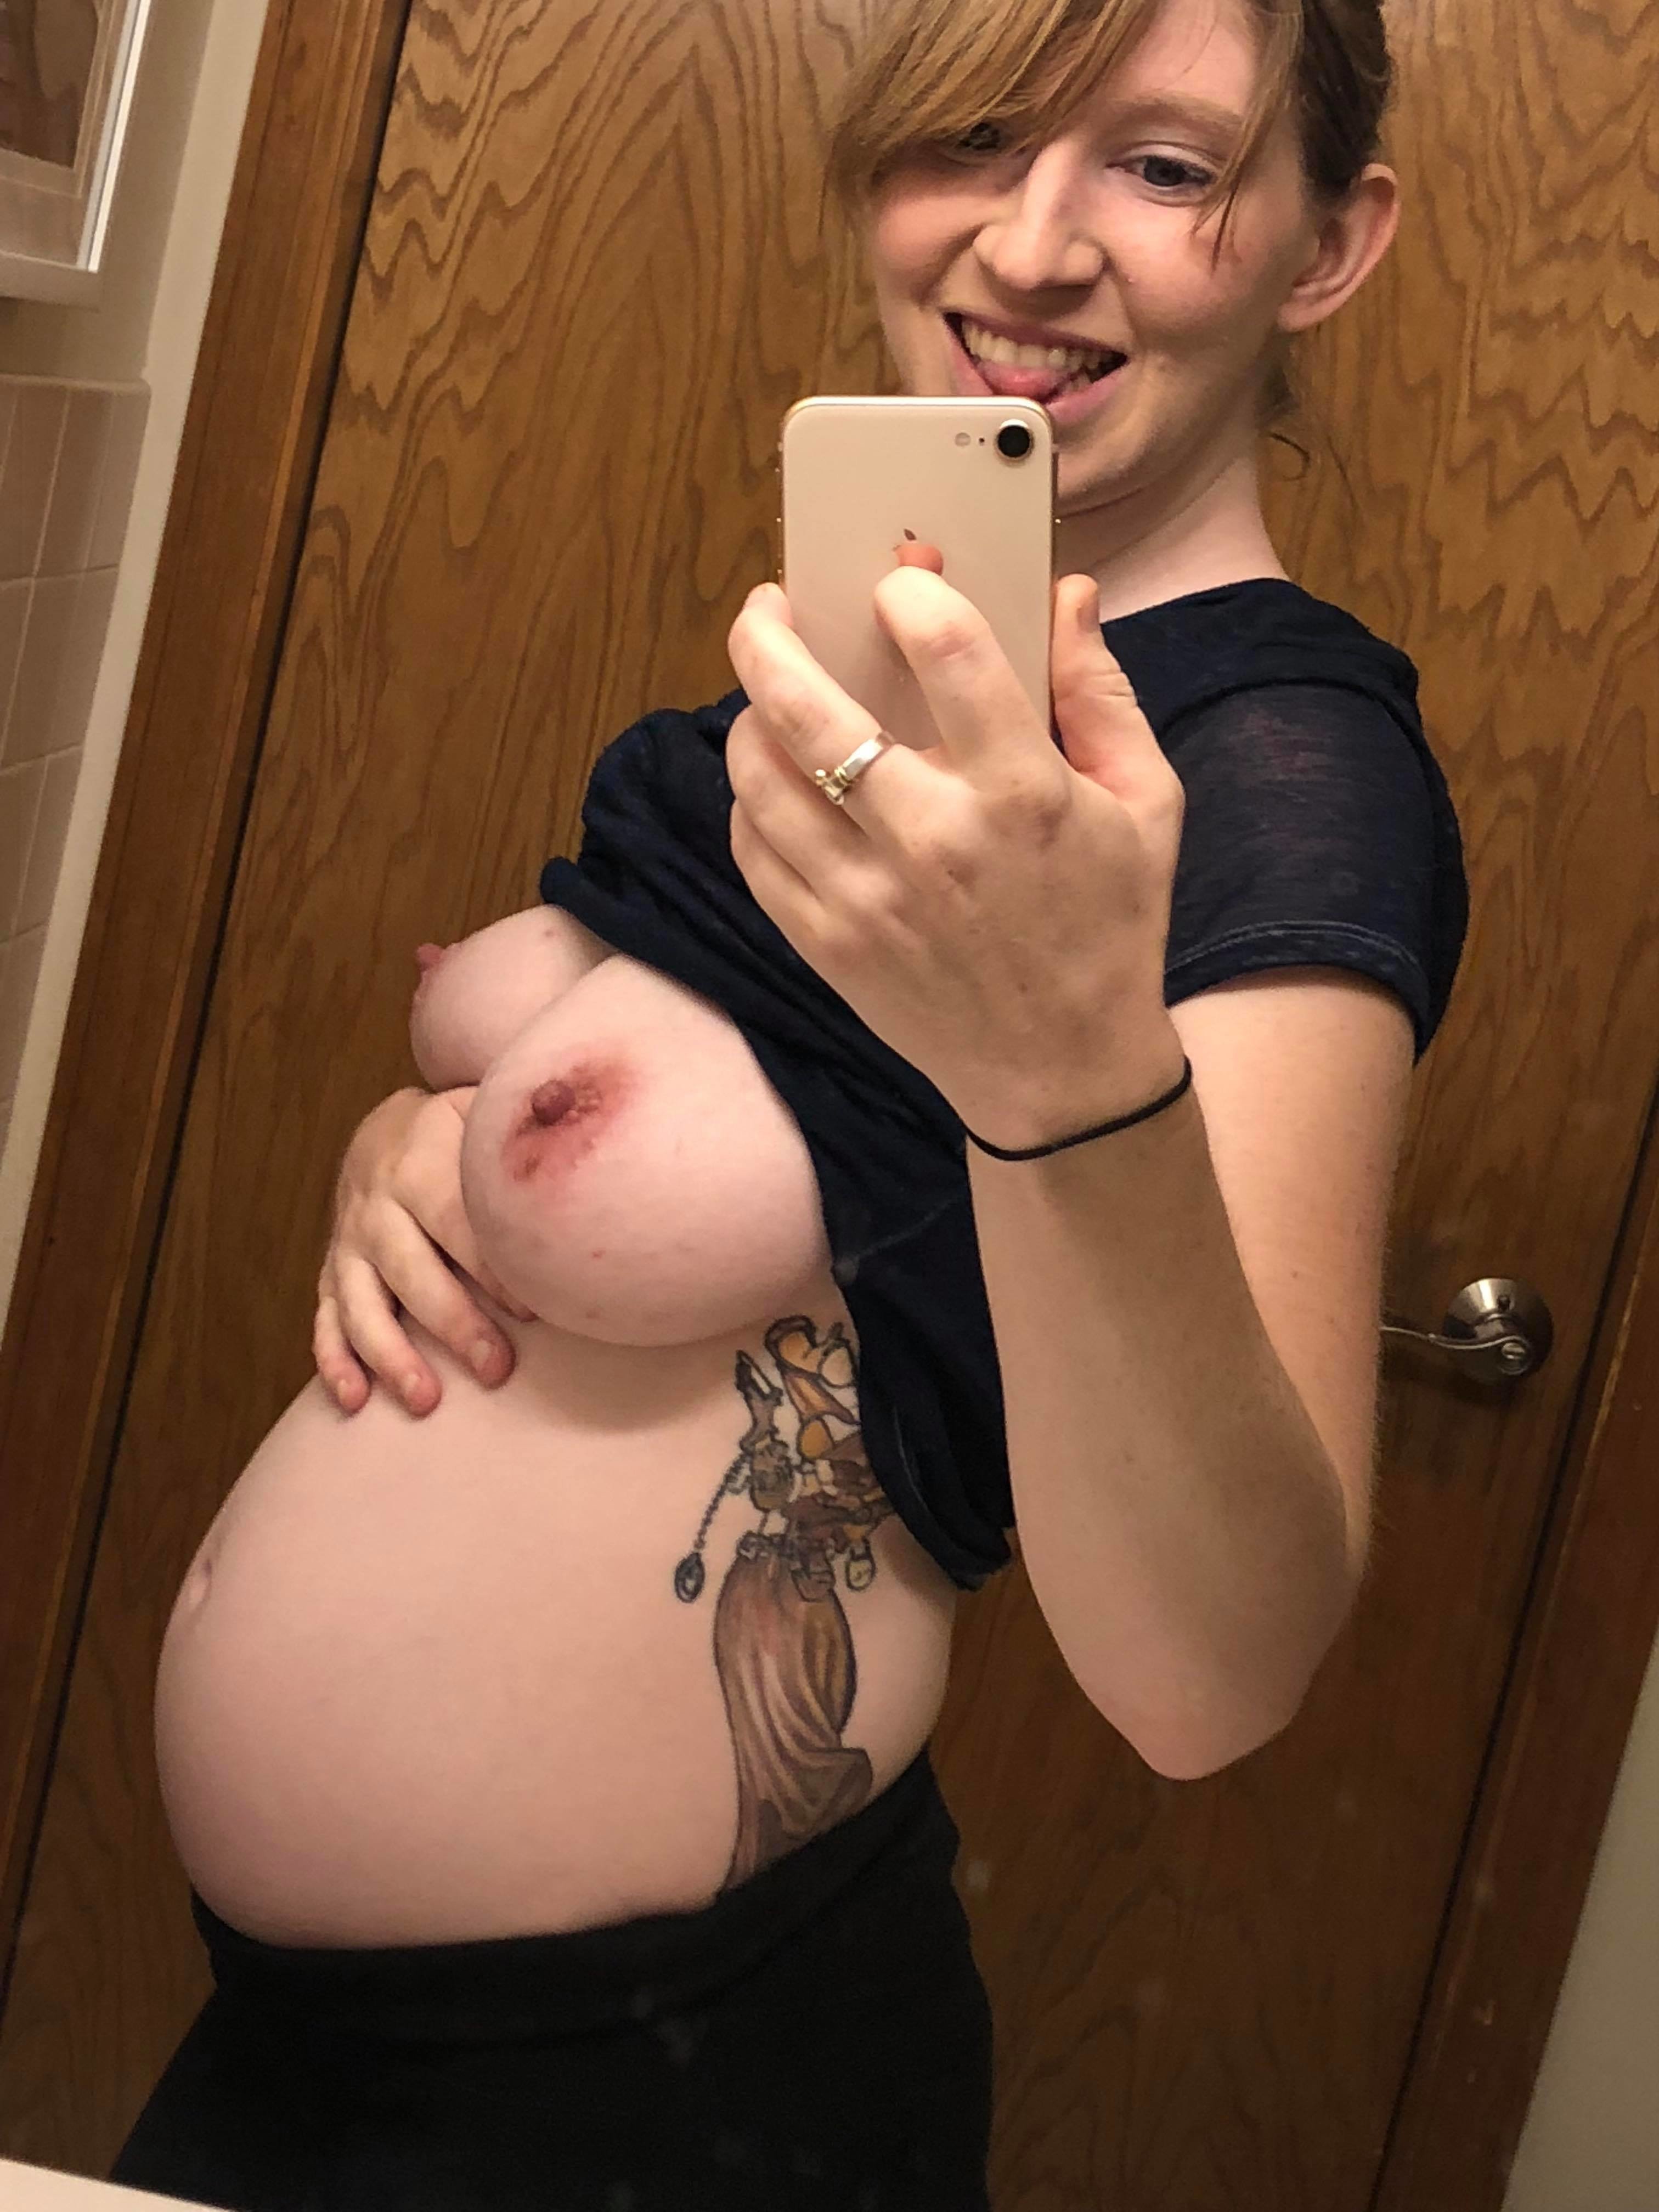 22 weeks pregnant reddit